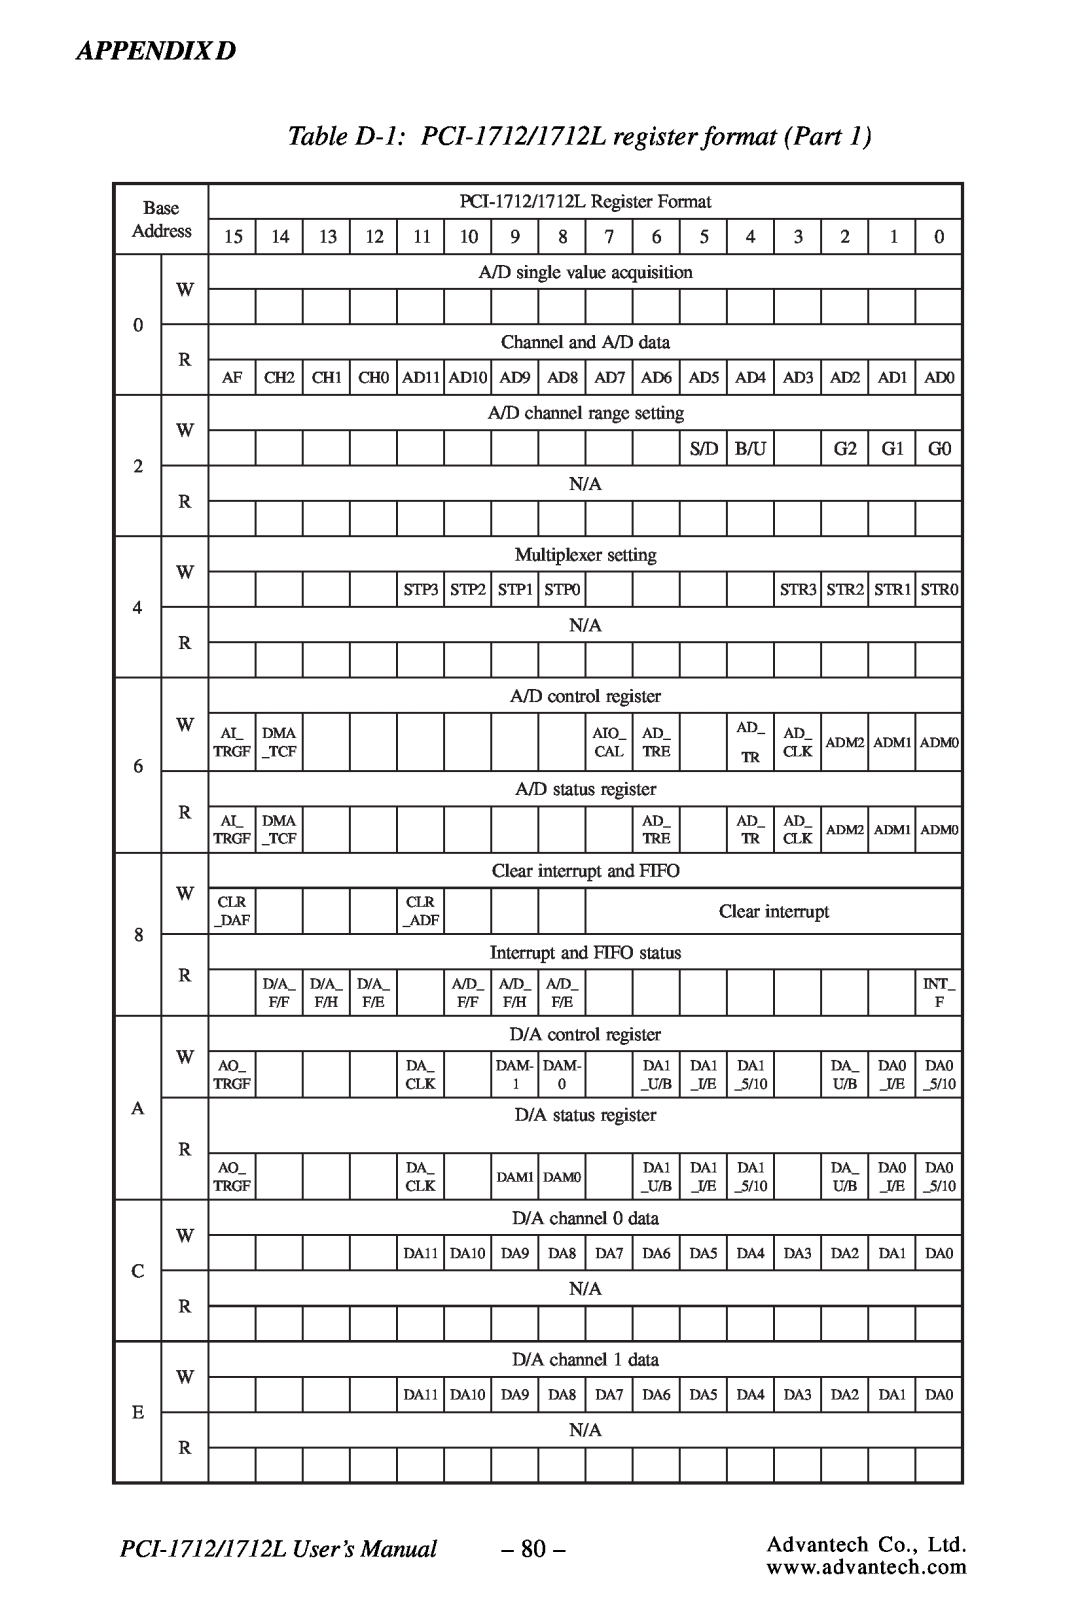 Konica Minolta PCI-1712L Table D-1 PCI-1712/1712L register format Part, Appendix D, PCI-1712/1712L User’s Manual 